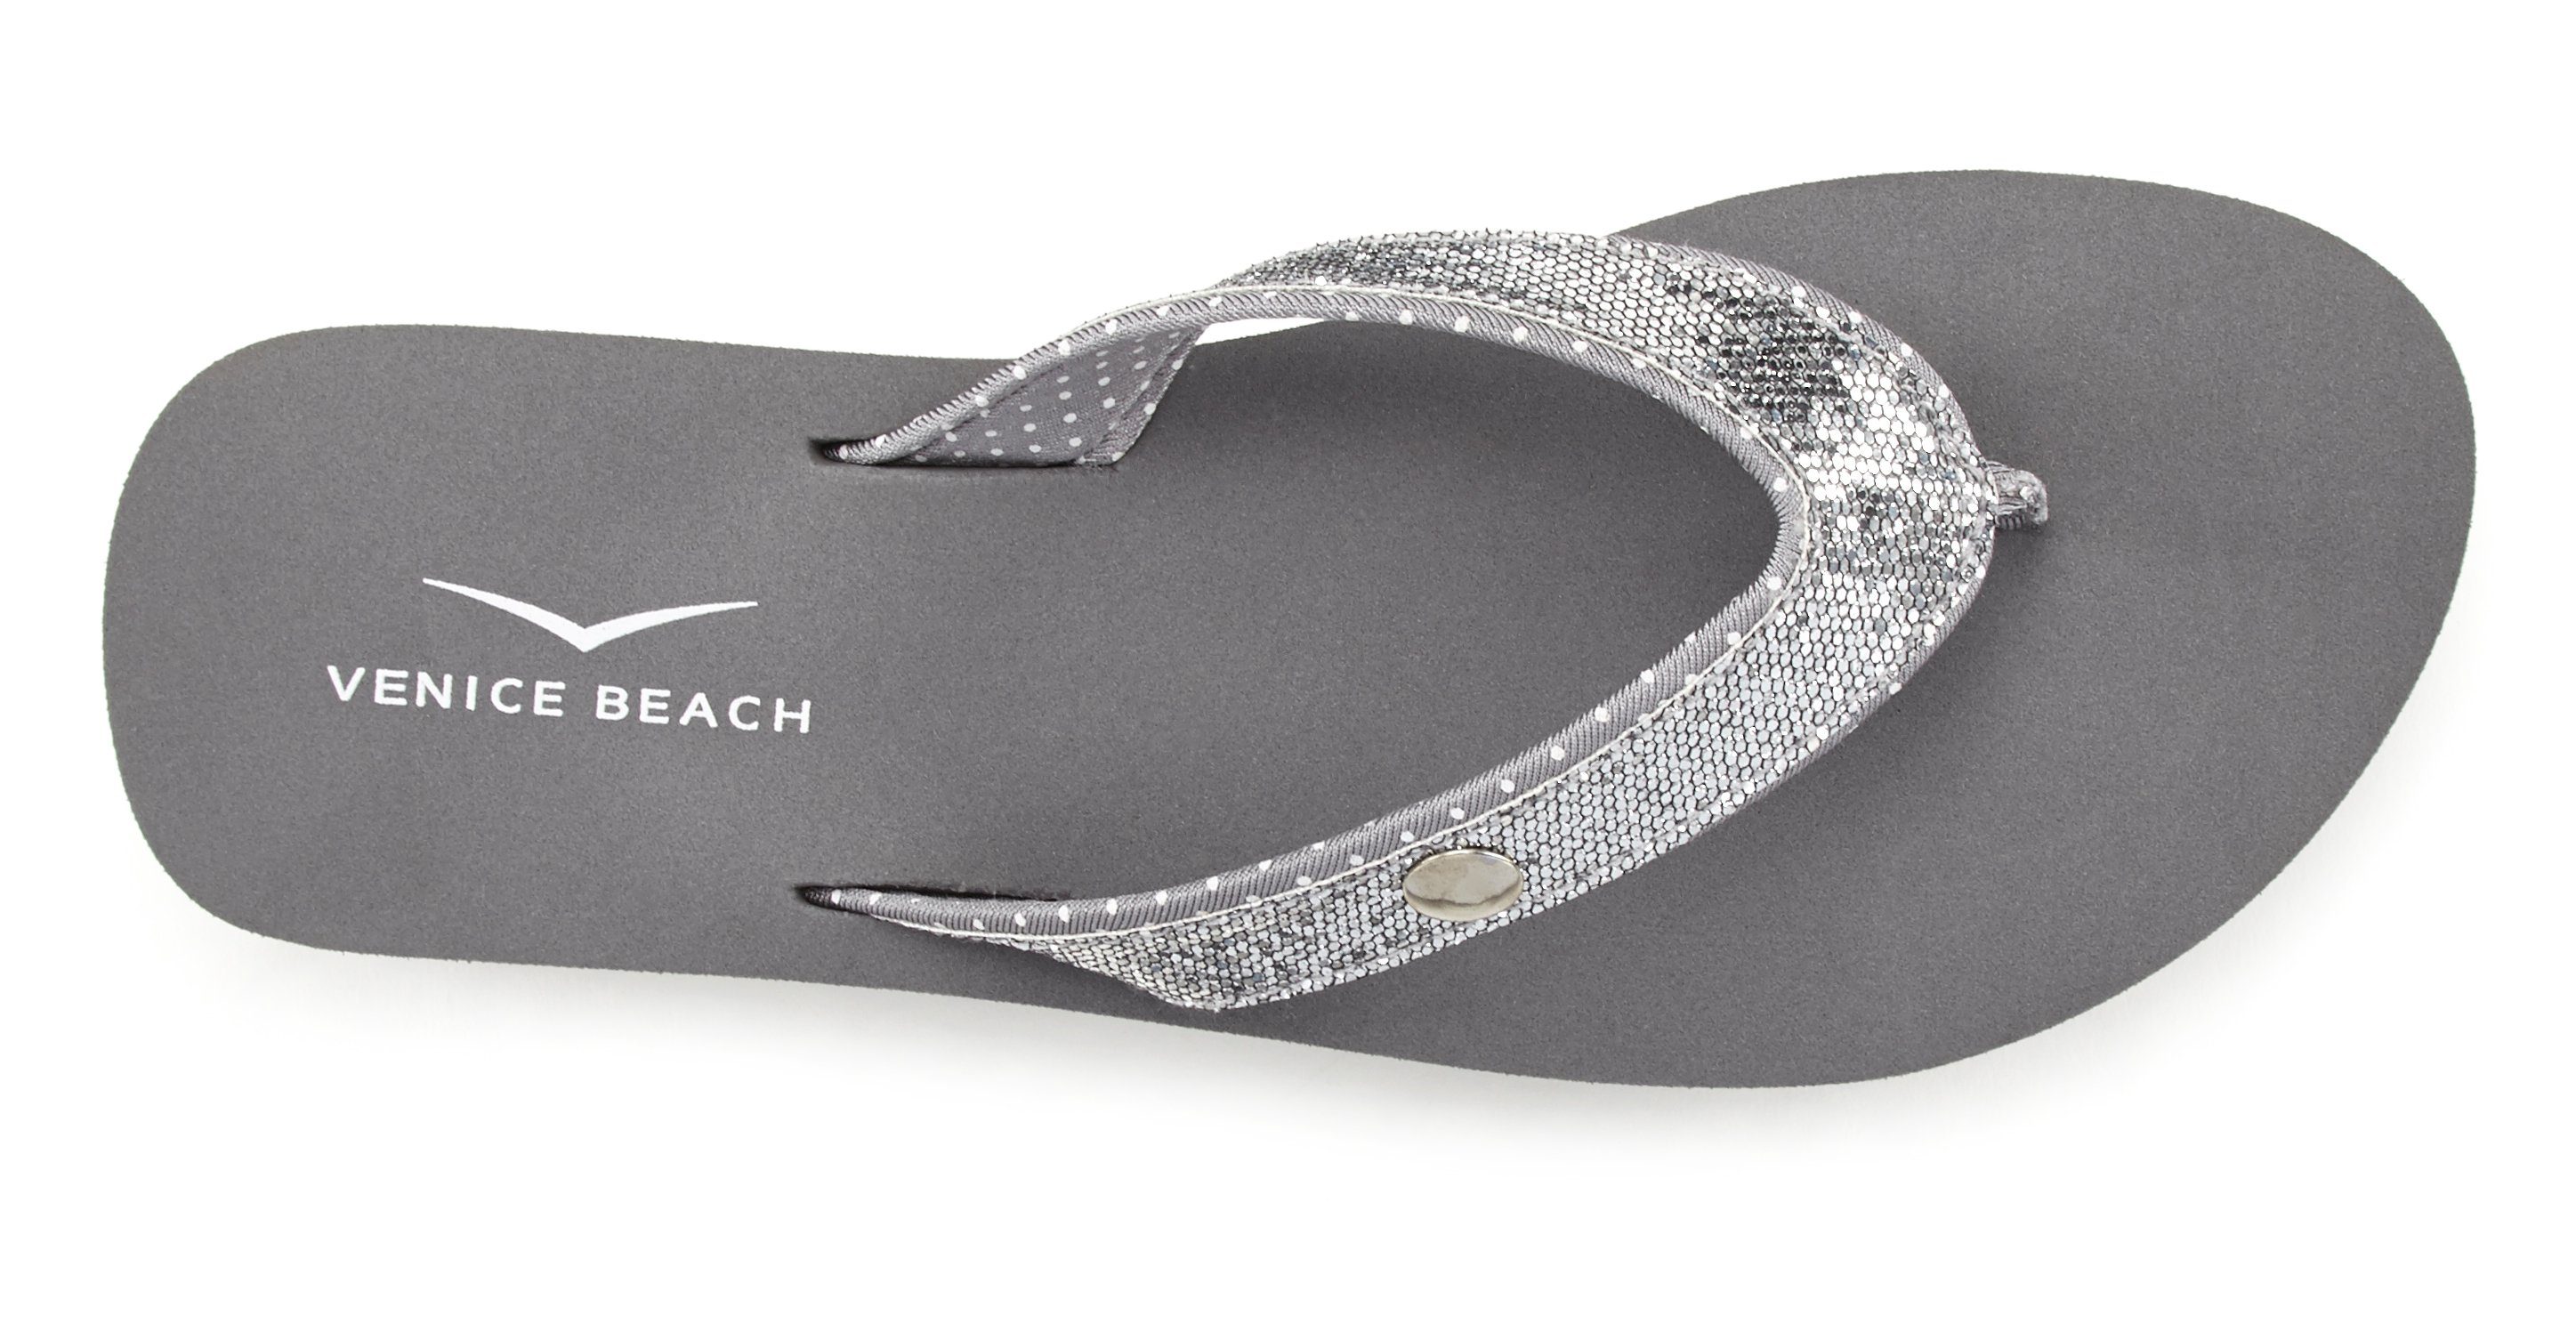 Venice Beach Badezehentrenner Sandale, Glitzerband mit VEGAN ultraleicht Pantolette, grau Badeschuh